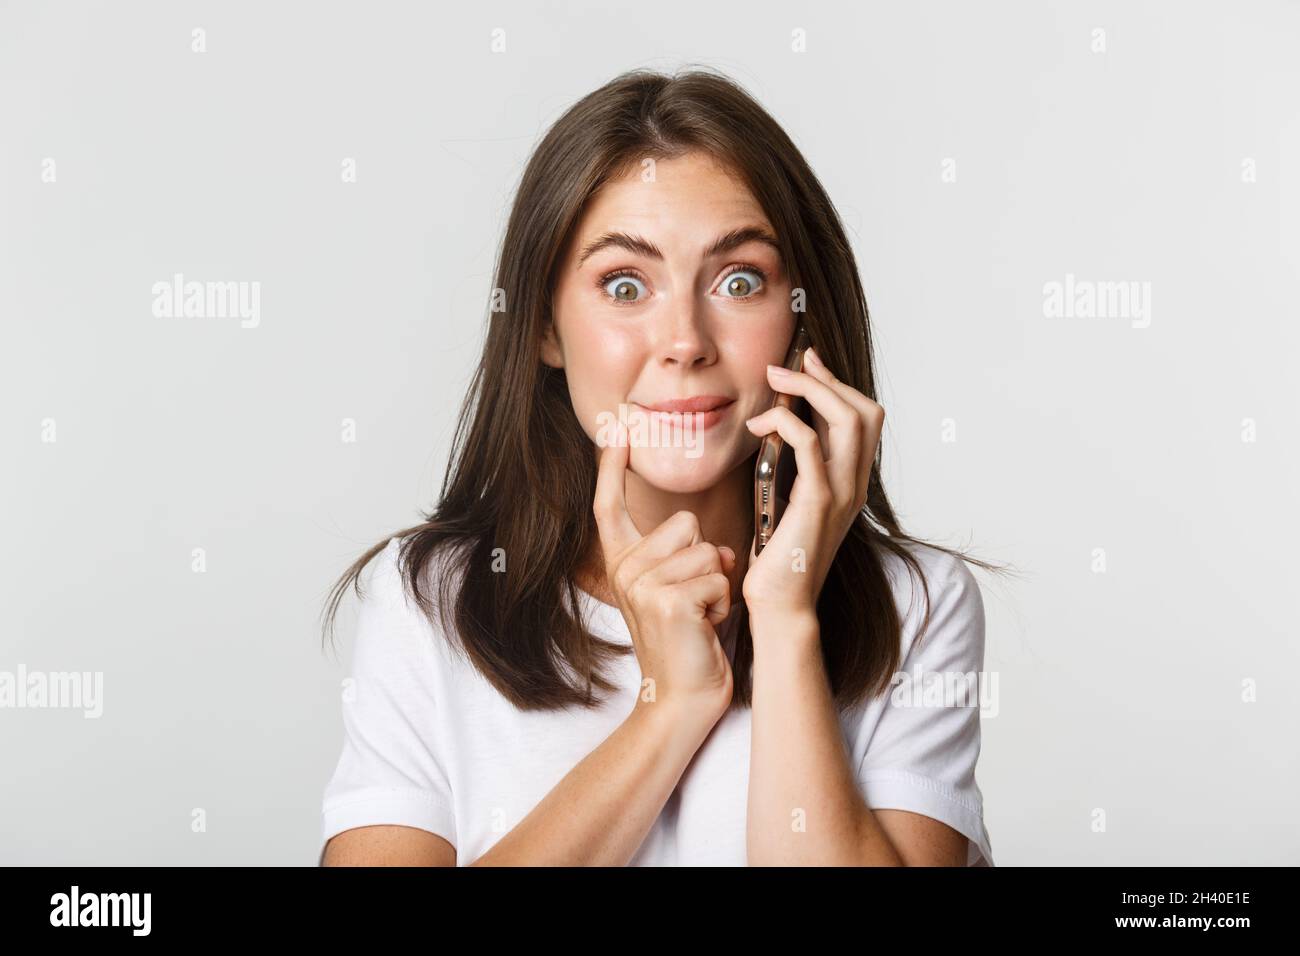 Close-up von fasziniert lächelnd Mädchen im Gespräch auf dem Smartphone mit versucht Ausdruck Stockfoto